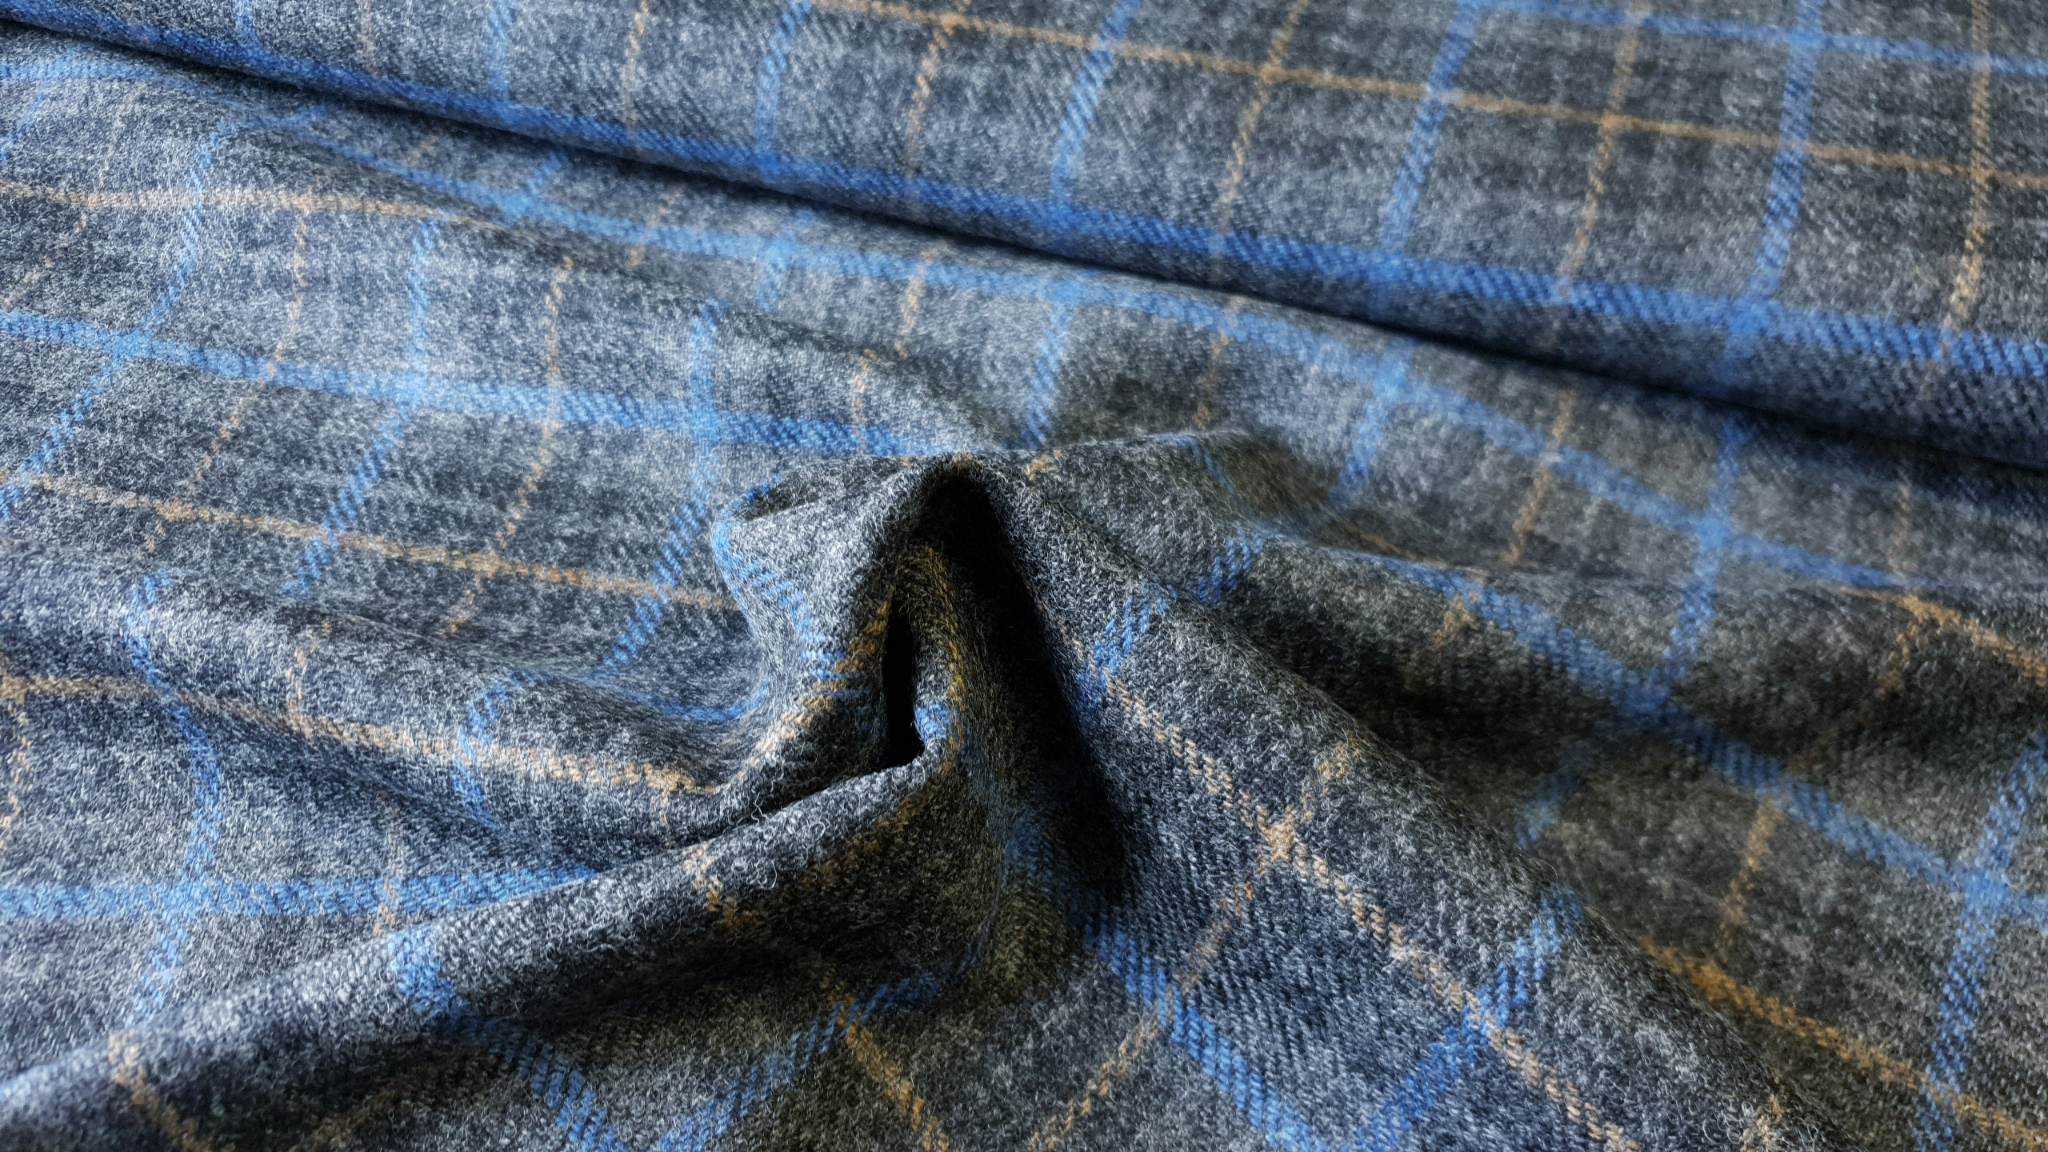 SHETLAND wool tweed-tartan 1